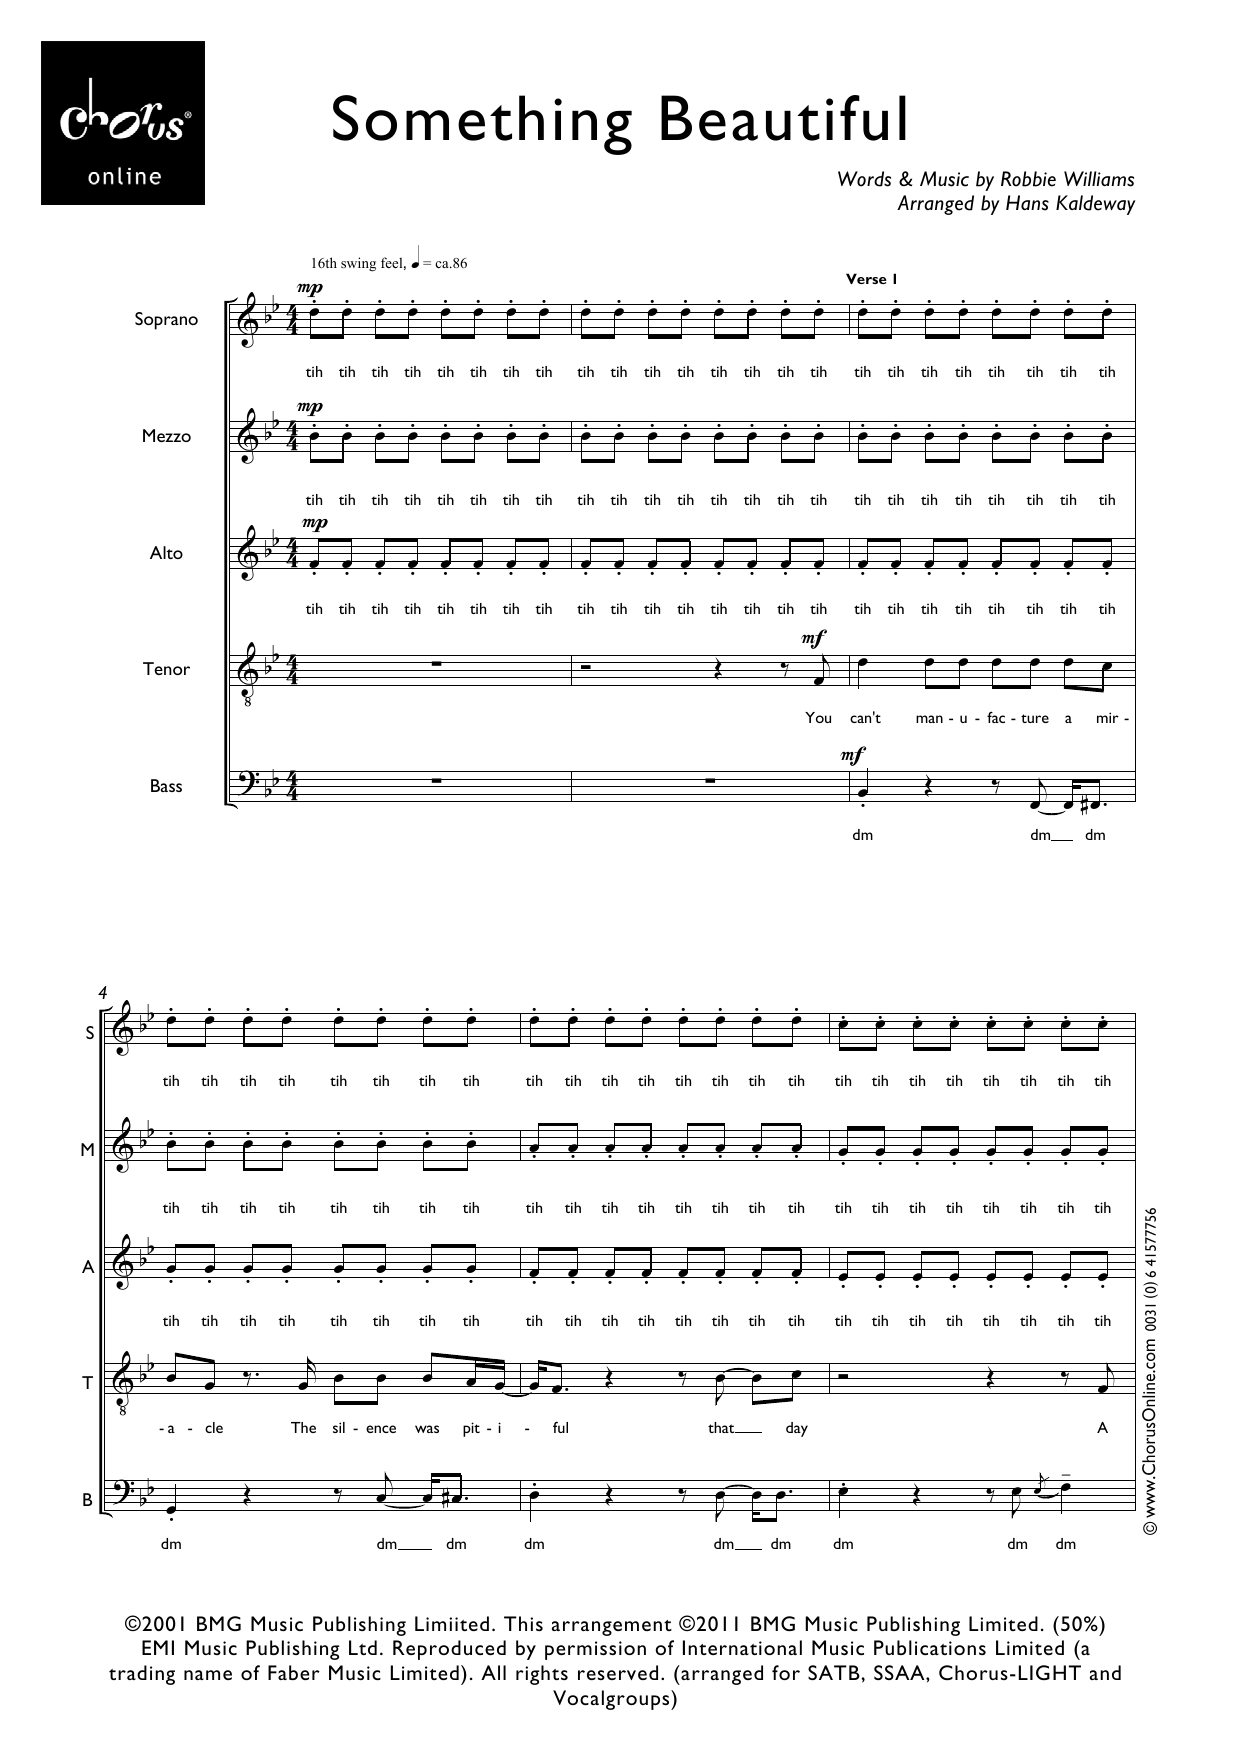 Robbie Williams Something Beautiful (arr. Hans Kaldeway) sheet music notes printable PDF score